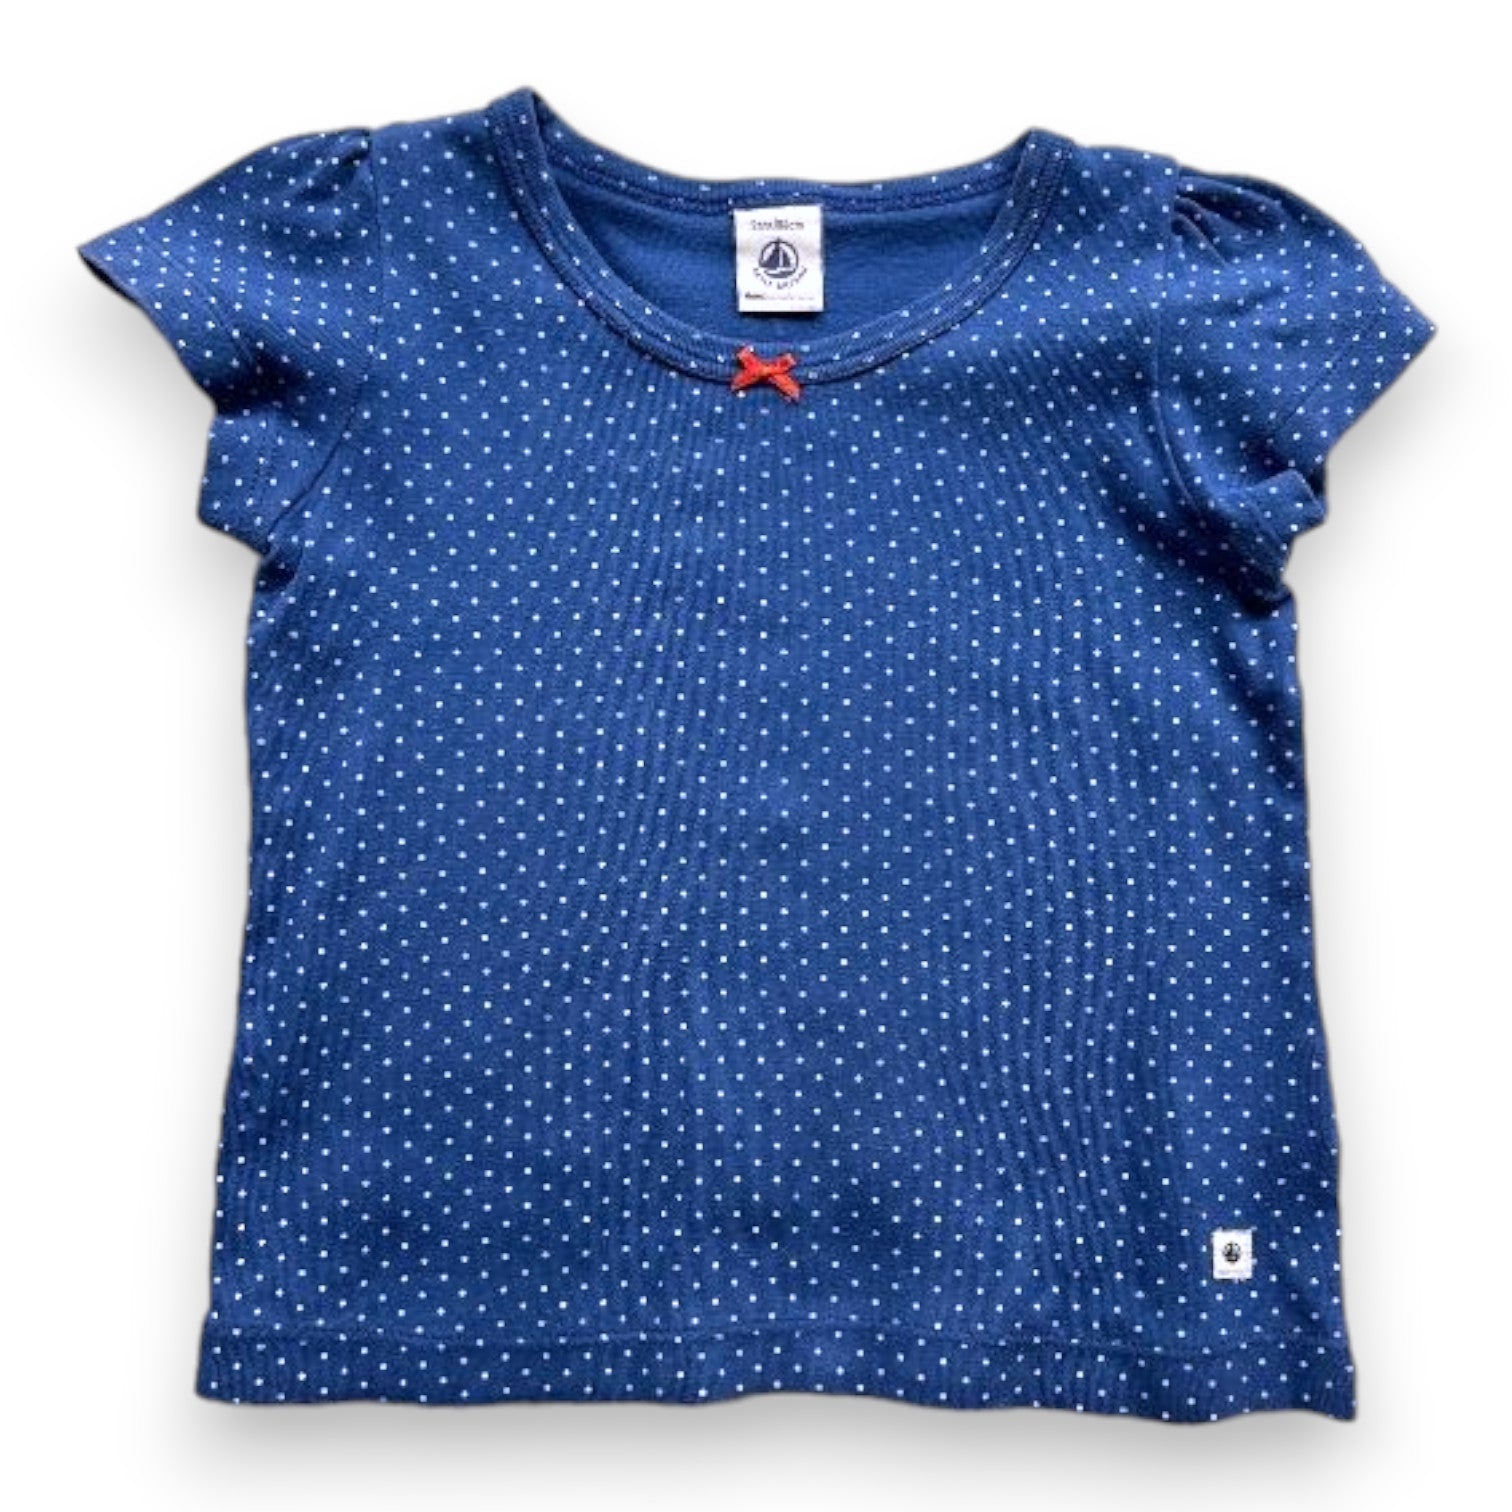 PETIT BATEAU - T-shirt bleu à pois - 2 ans